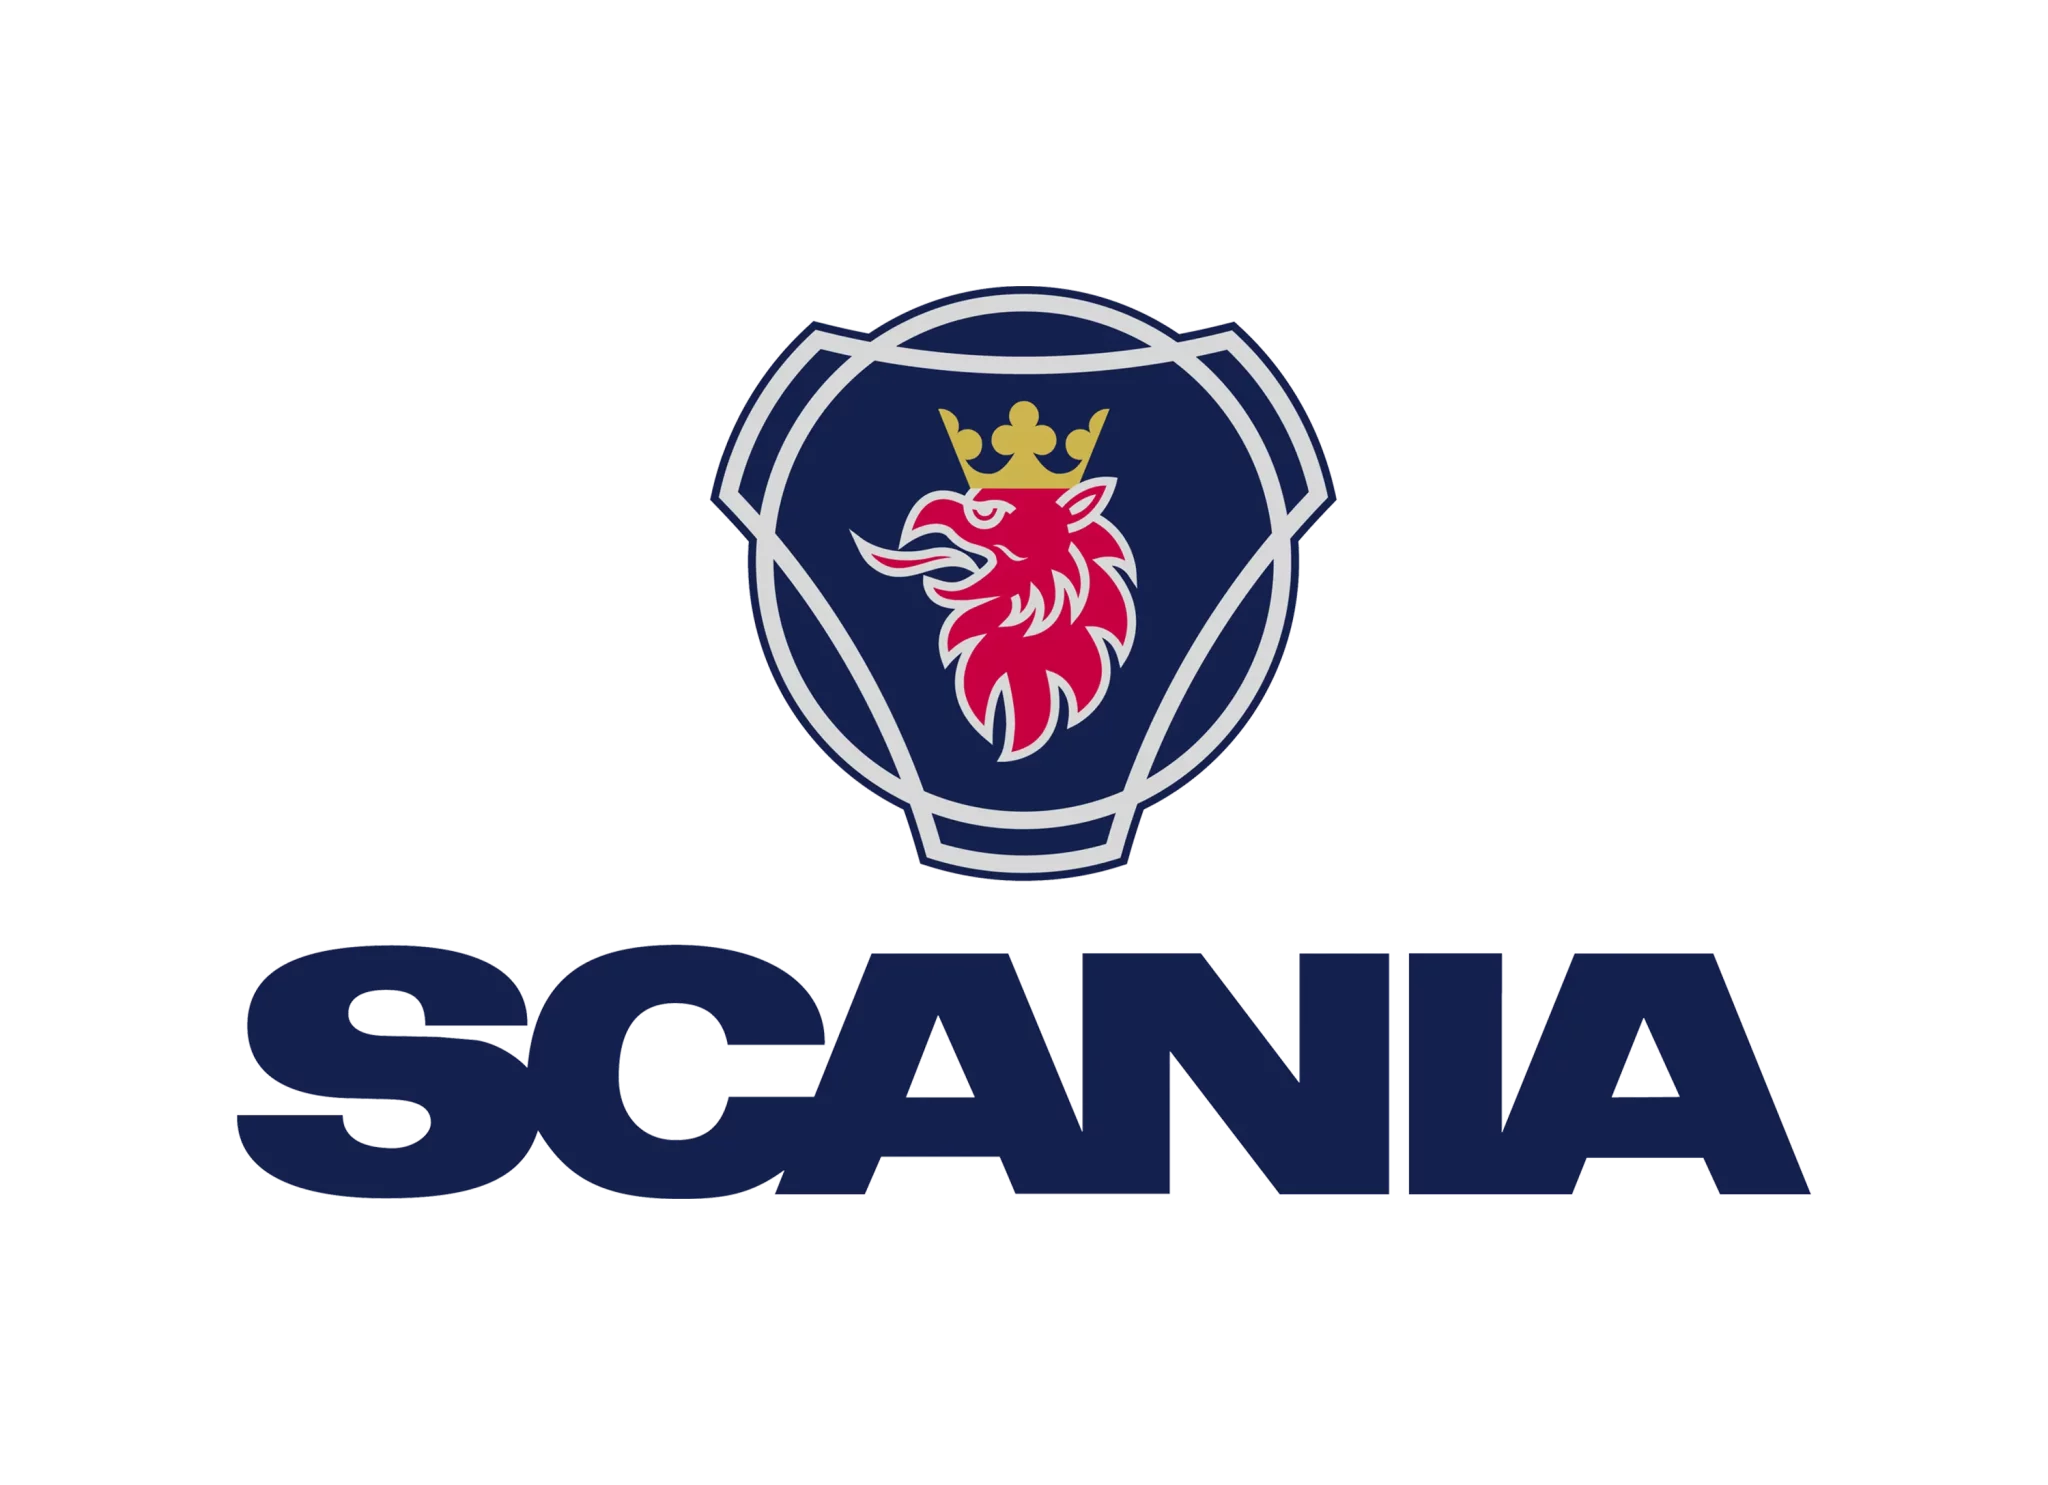 Логотип скания. Значок Скания. Логотип компании Scania. Надпись Скания. Эмблемы фирм грузовиков.